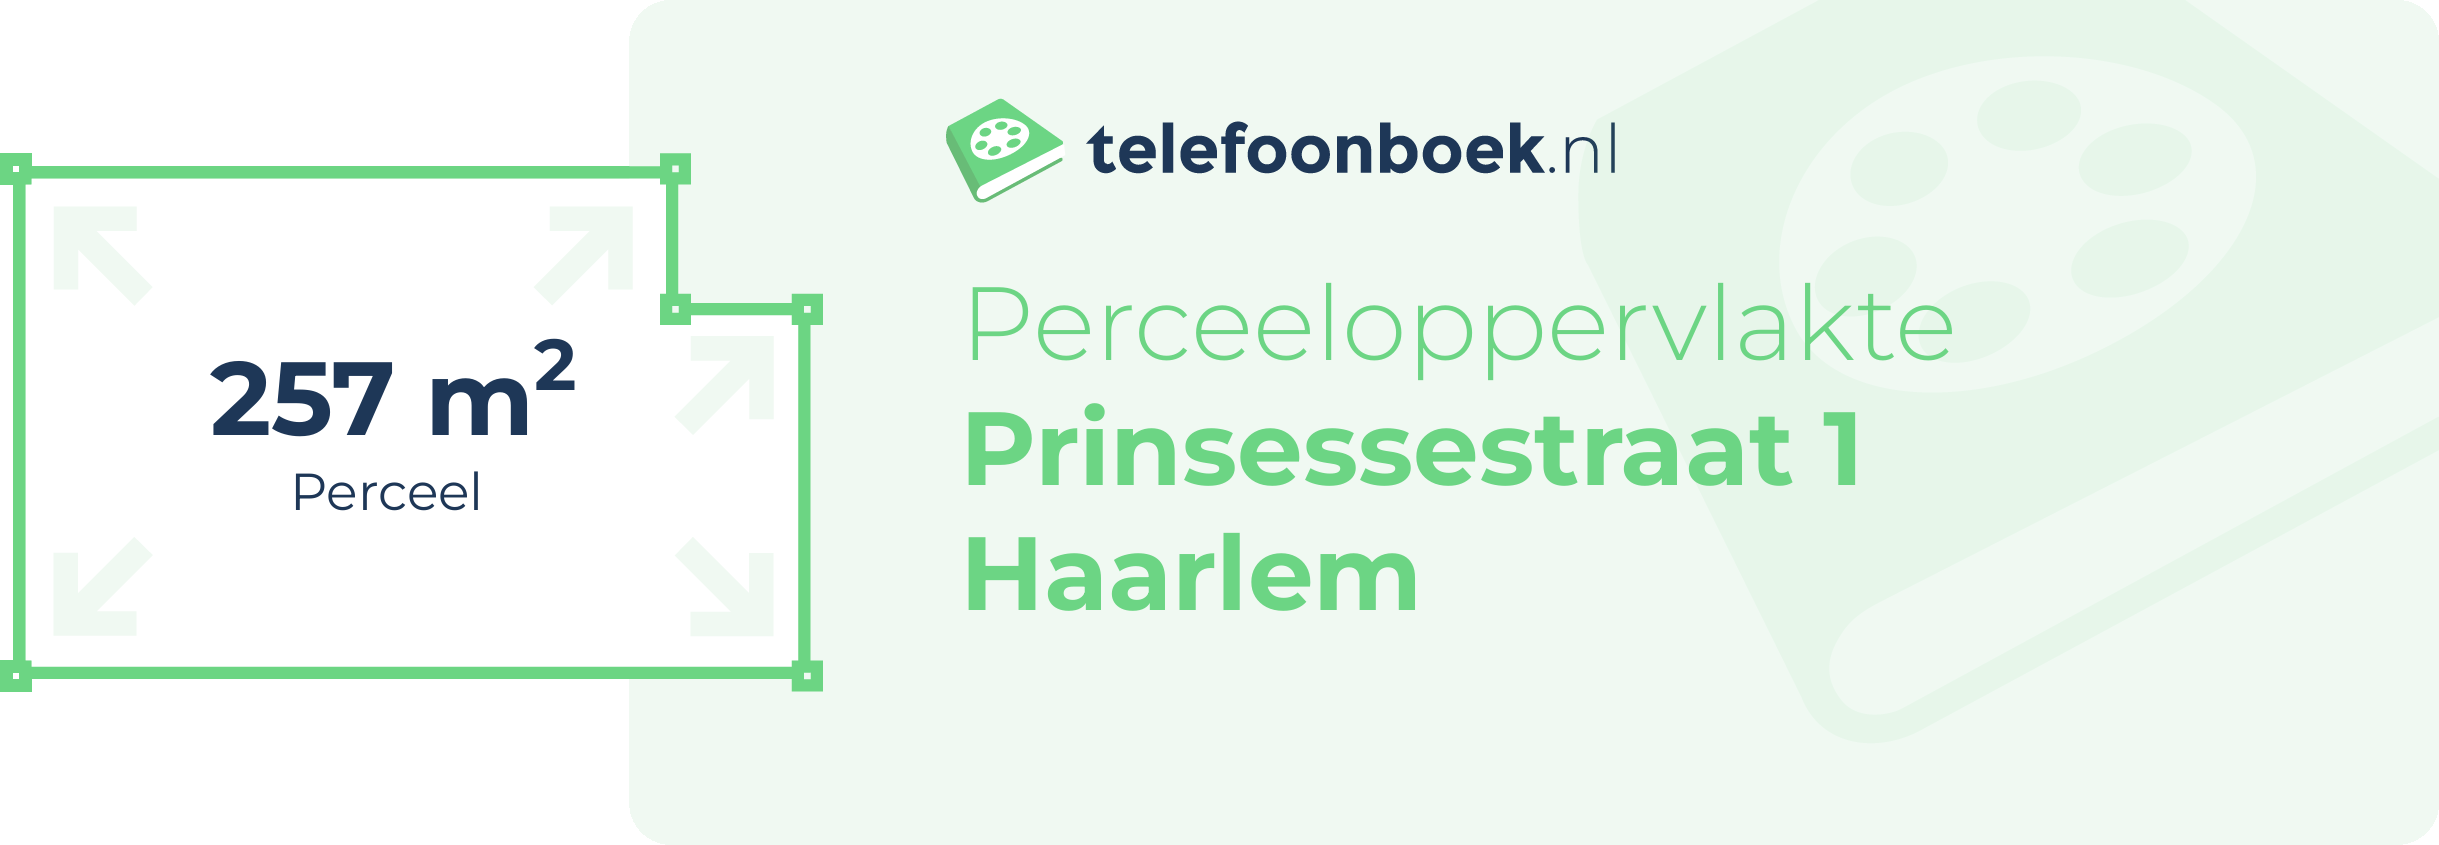 Perceeloppervlakte Prinsessestraat 1 Haarlem